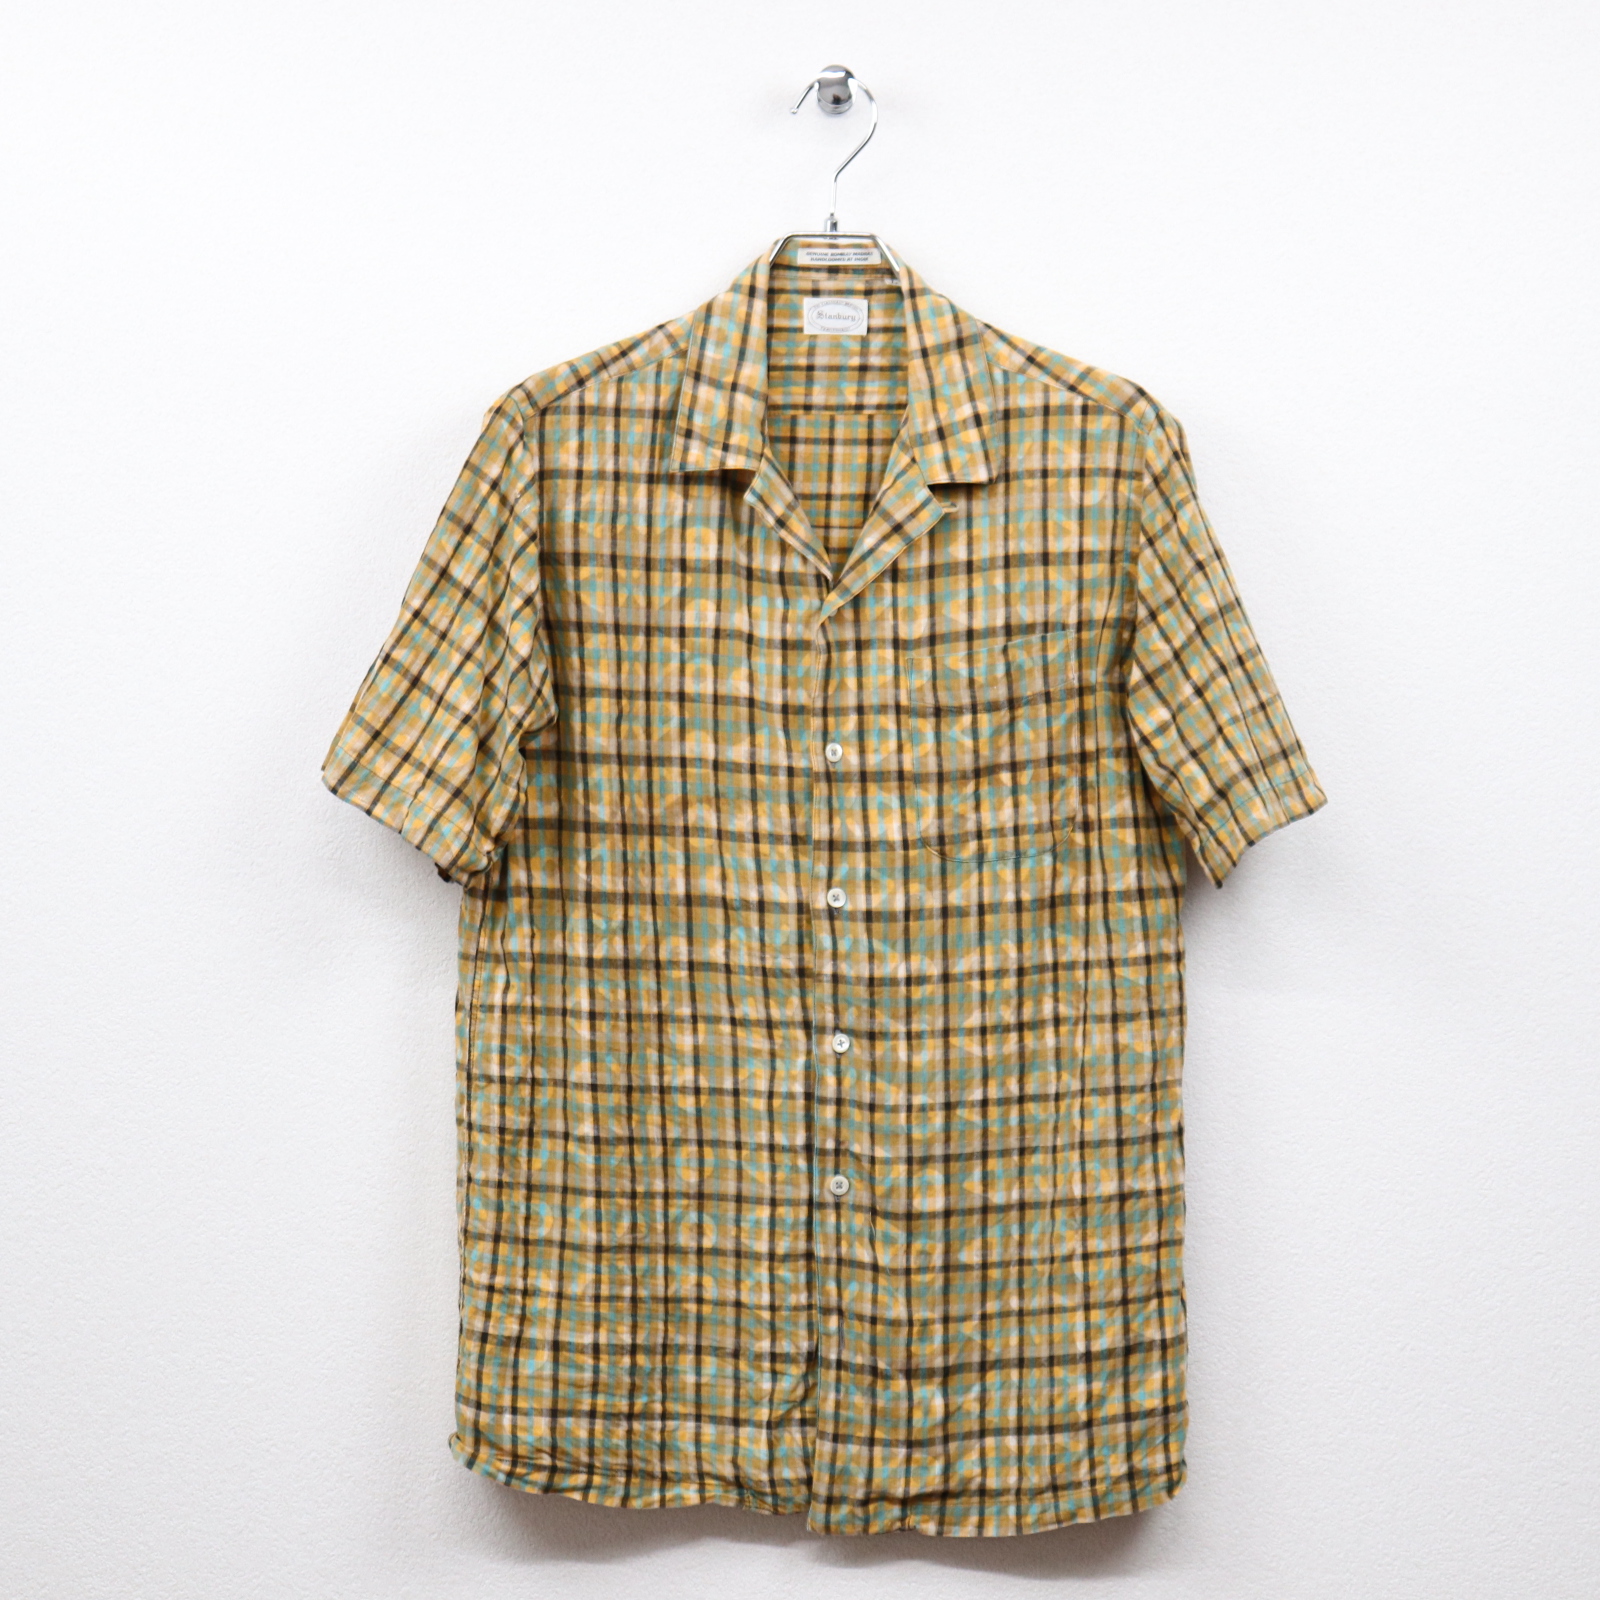 スタンバリー（Stanbury）インドマドラスチェックプリント柄半袖オープンシャツ Lサイズ コンディションB イエロー系 価格1,980(税込)売切れ